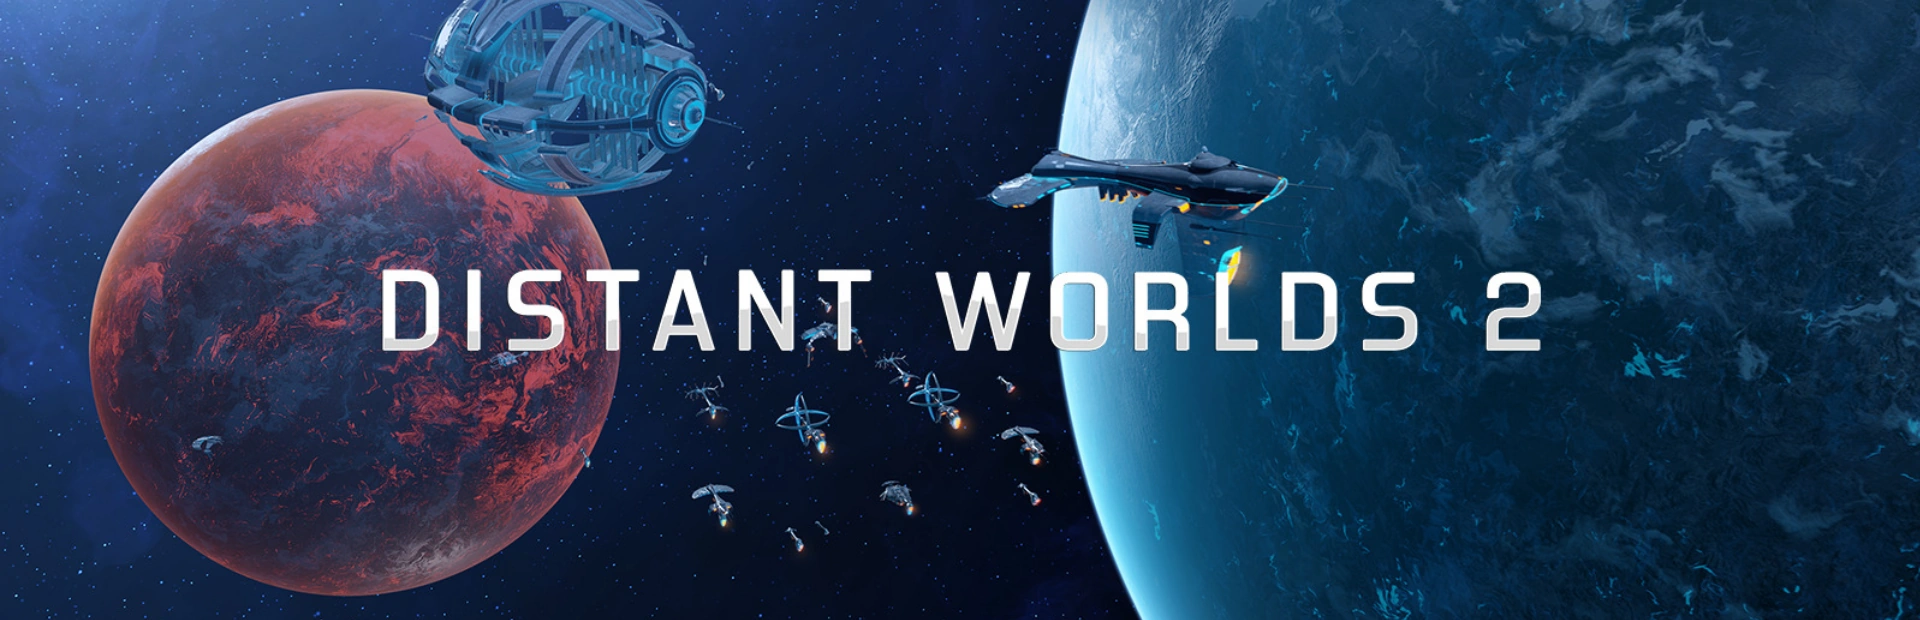 DISTANT WORLDS 2.banner1